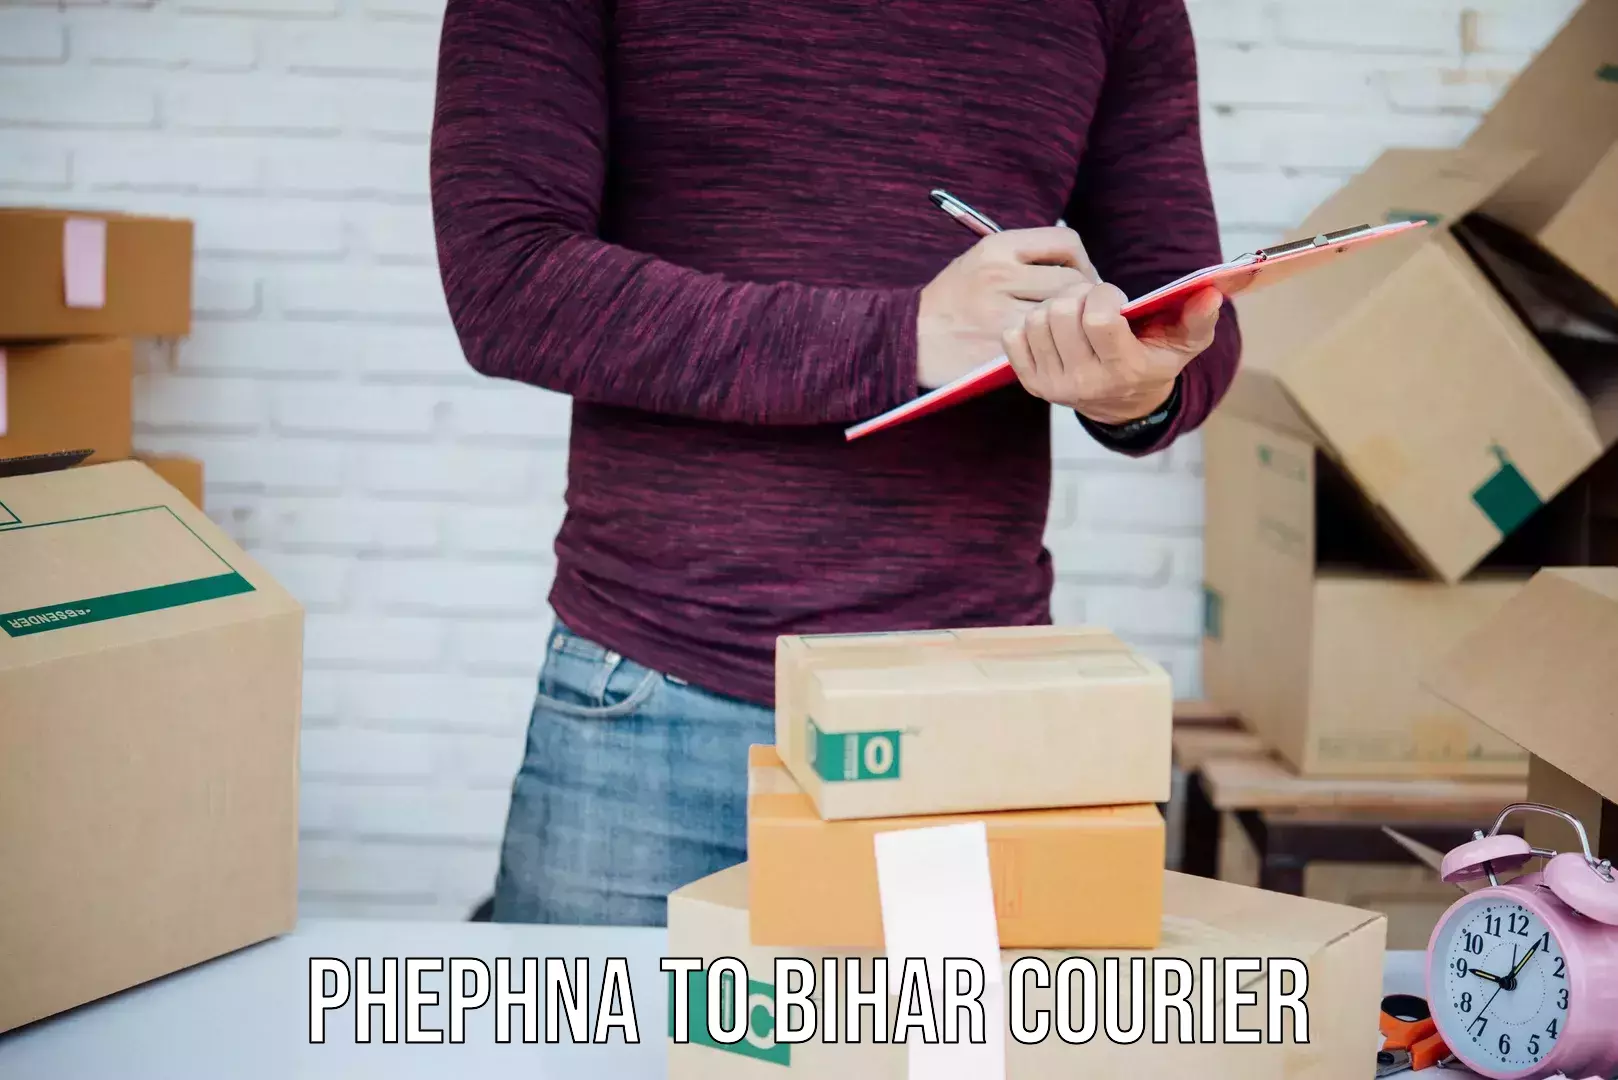 Quick booking process Phephna to Arrah